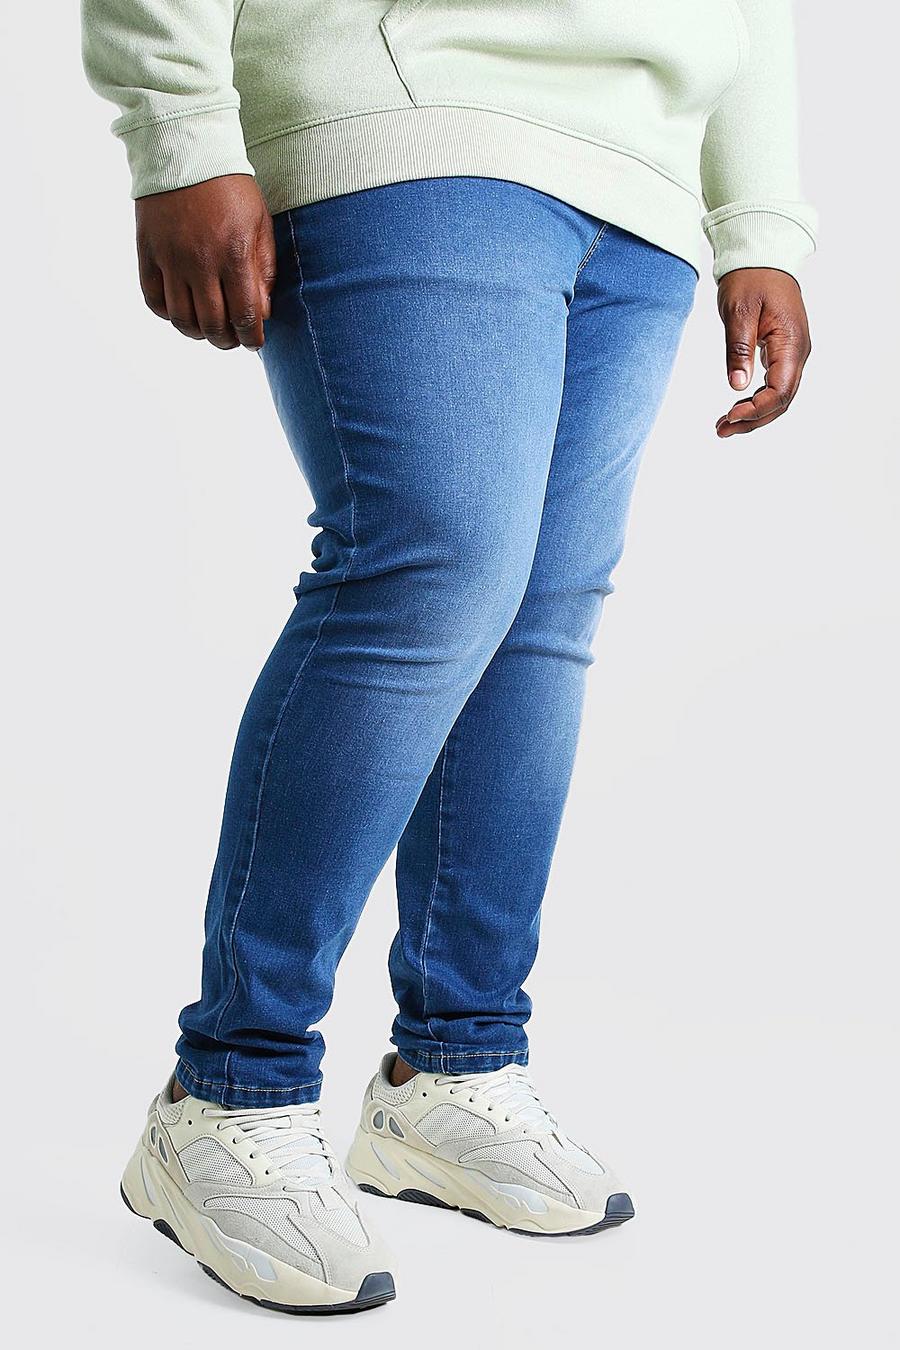 כחול ביניים סקיני ג'ינס לגברים גדולים וגבוהים image number 1